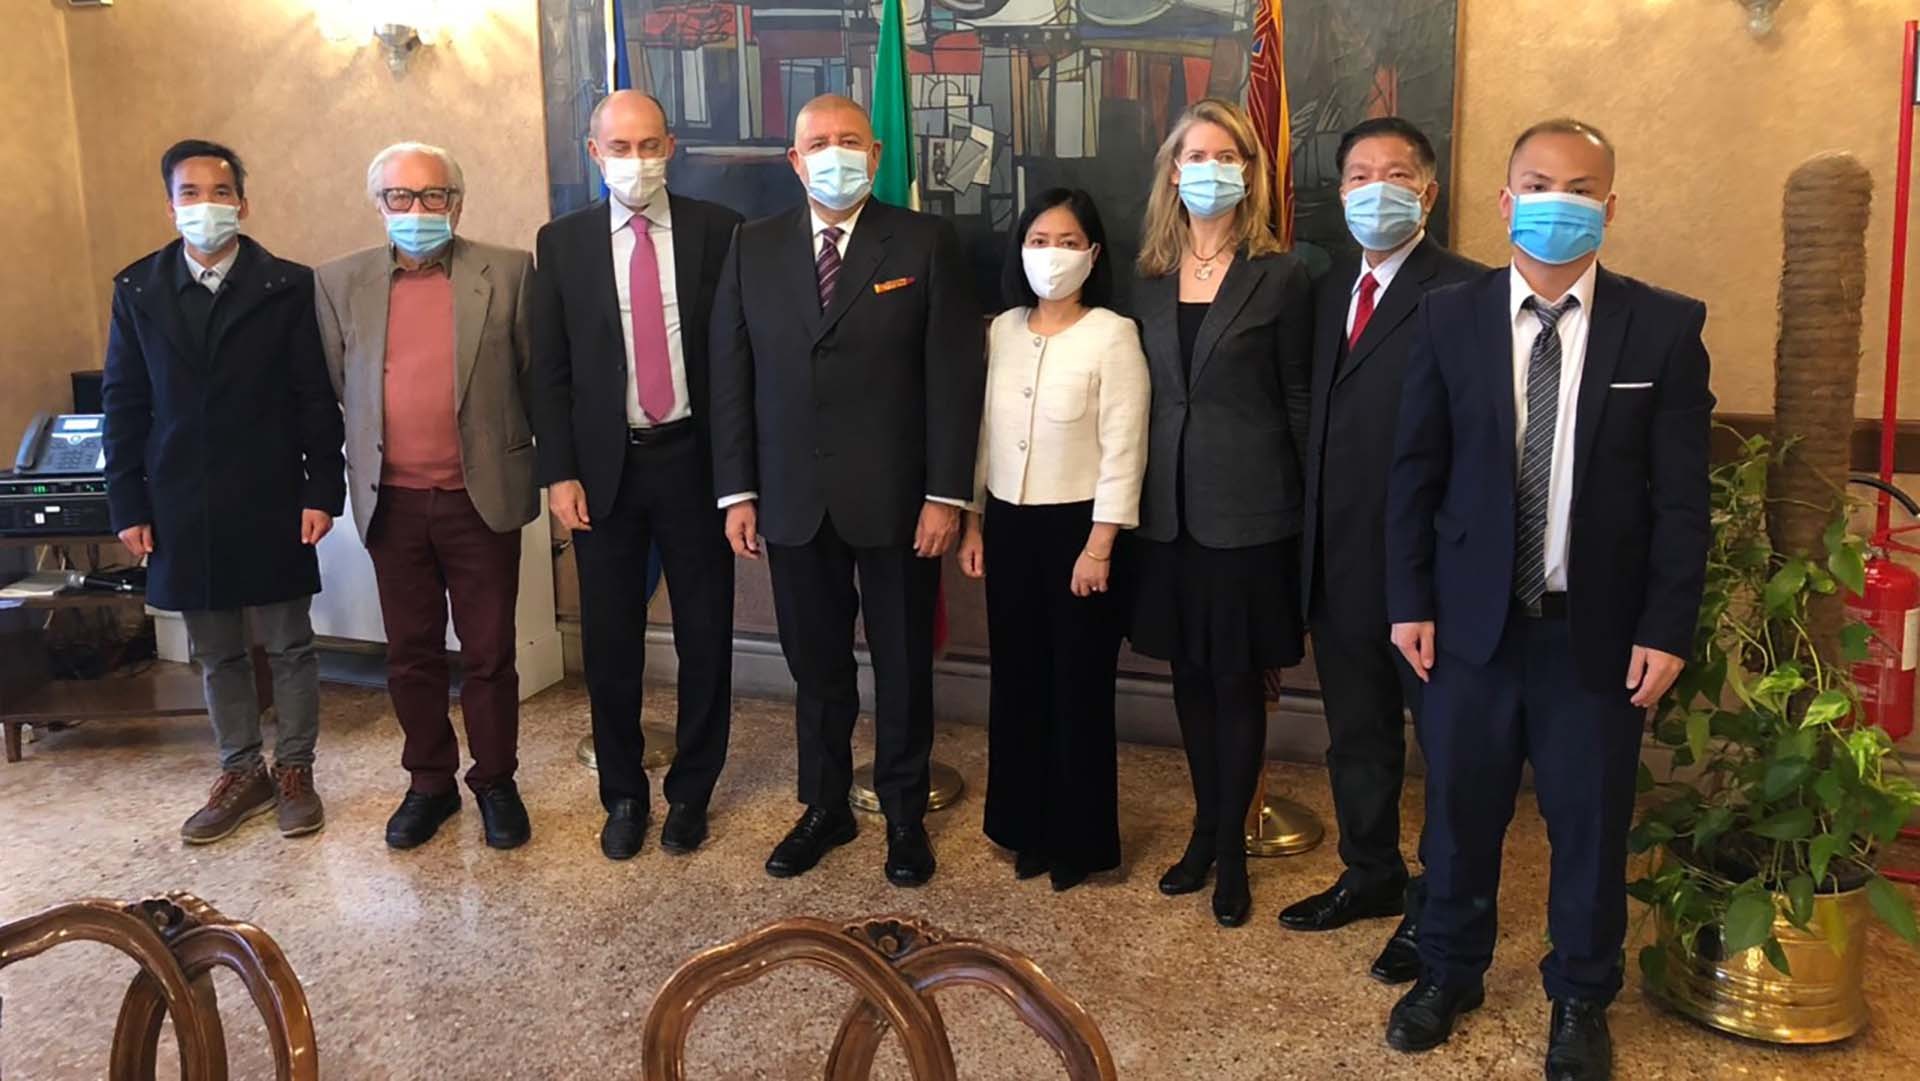 Đại sứ Việt Nam tại Italy Nguyễn Thị Bích Huệ đã có chuyến thăm và làm việc tại Vùng Veneto